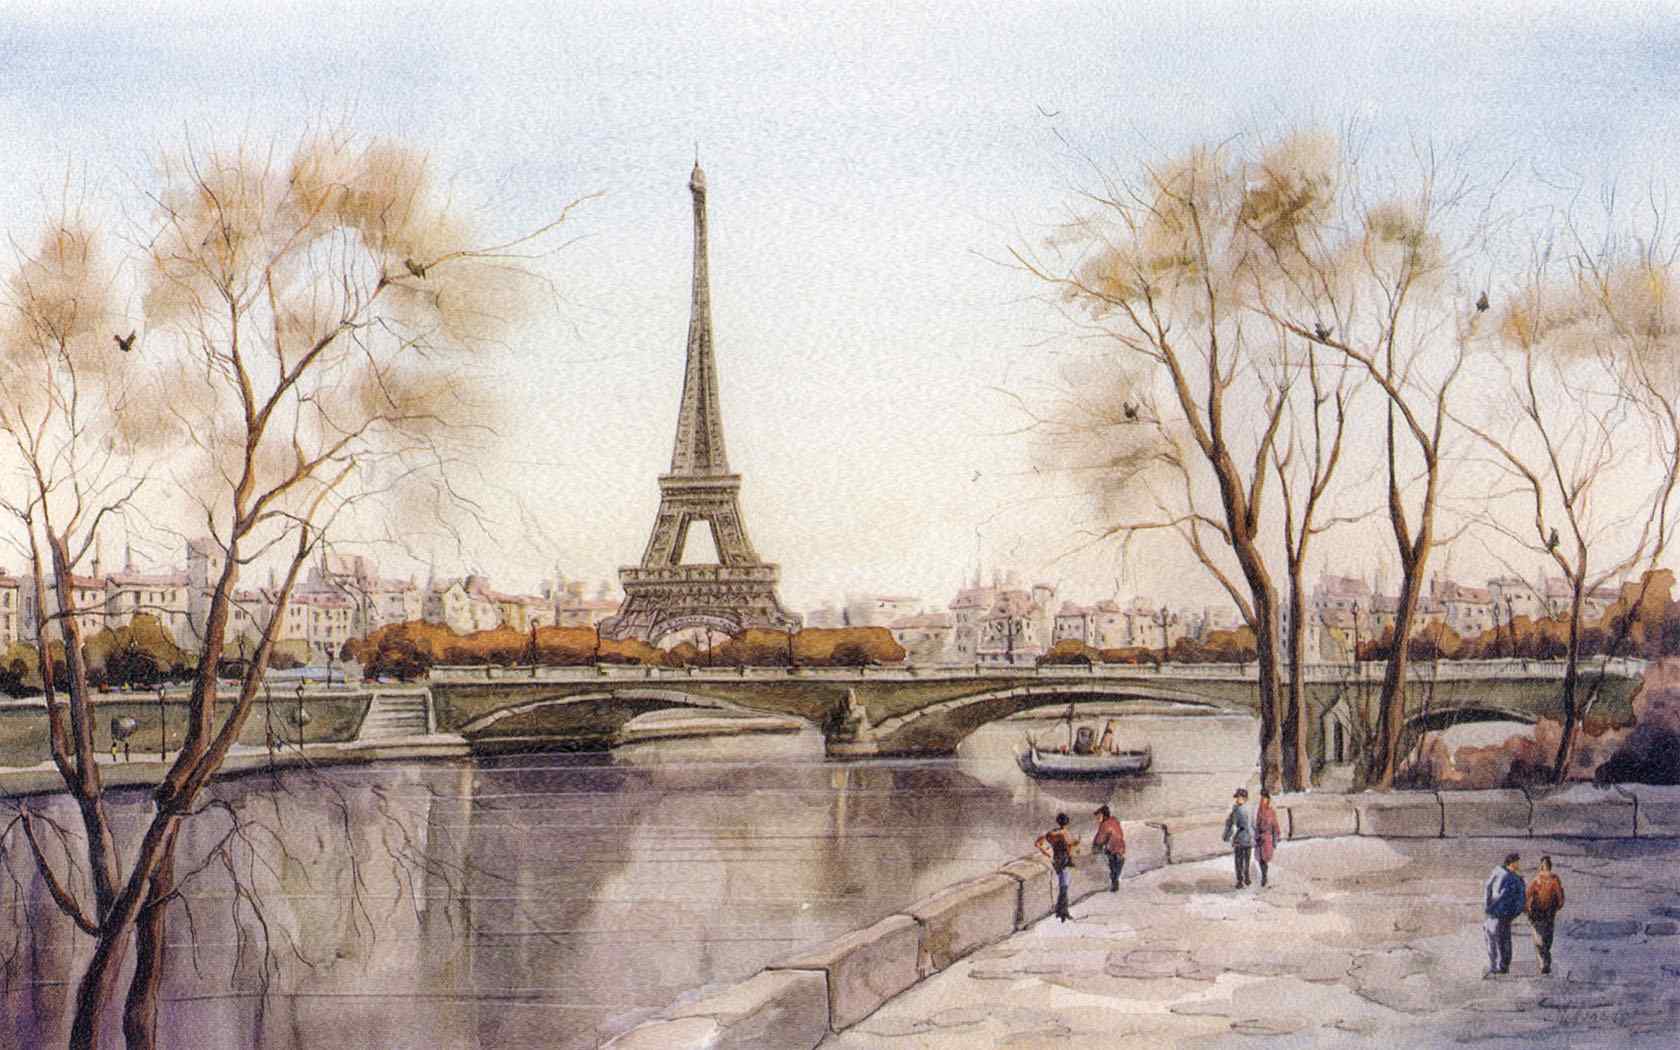 巴黎艾菲尔铁塔桌面背景之手绘篇